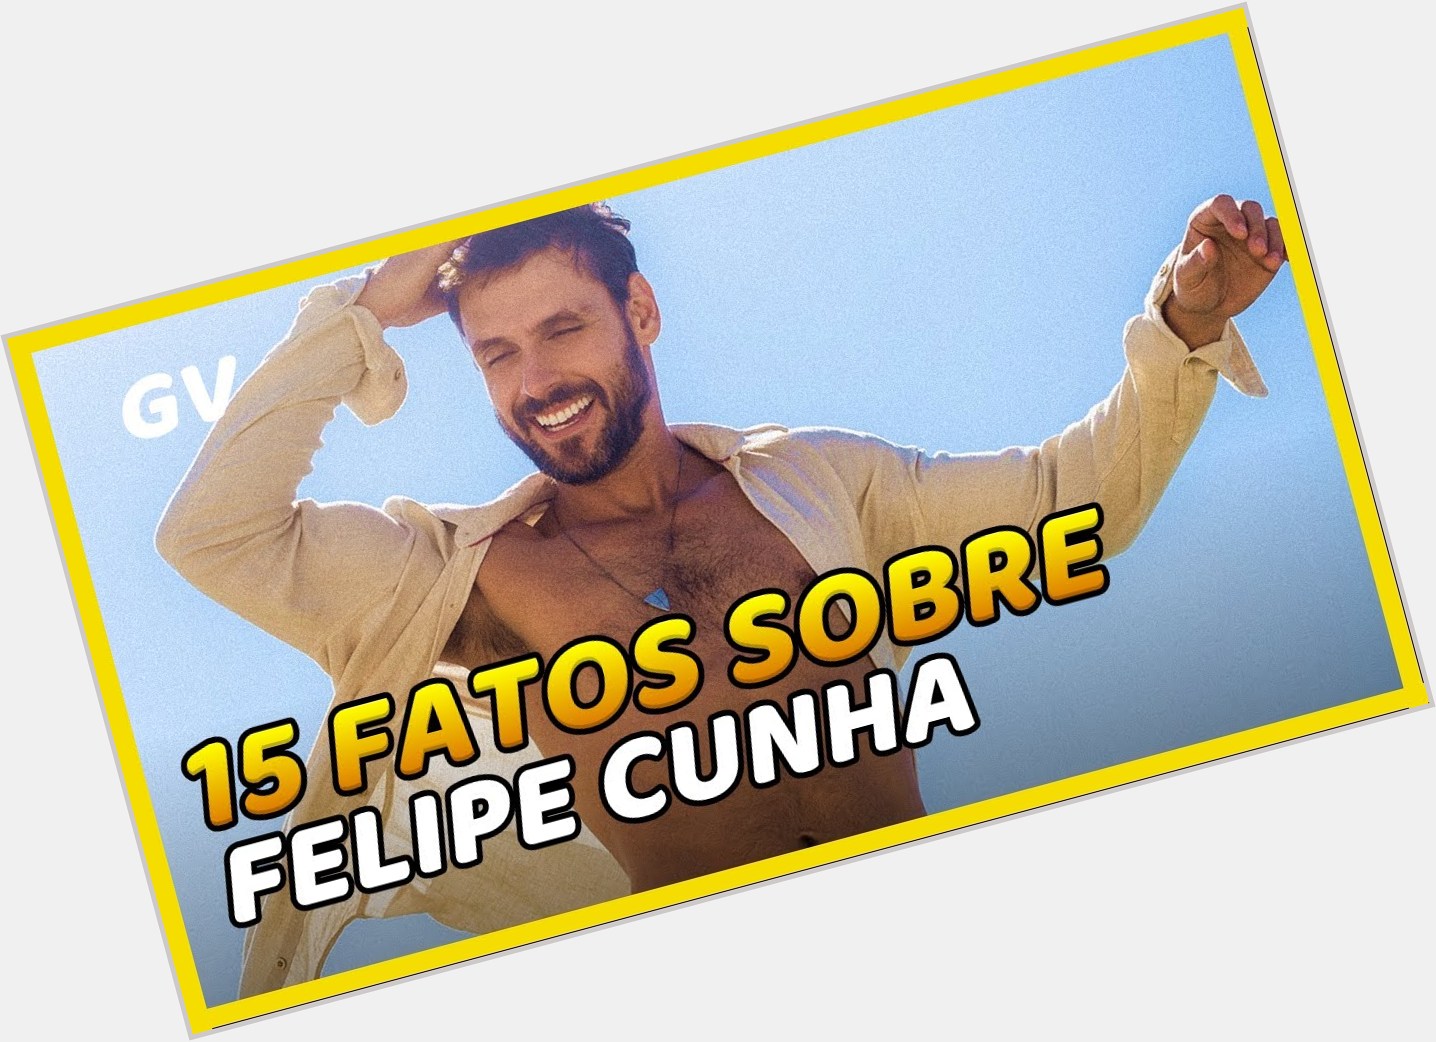 Filipe Cunha sexy 3.jpg